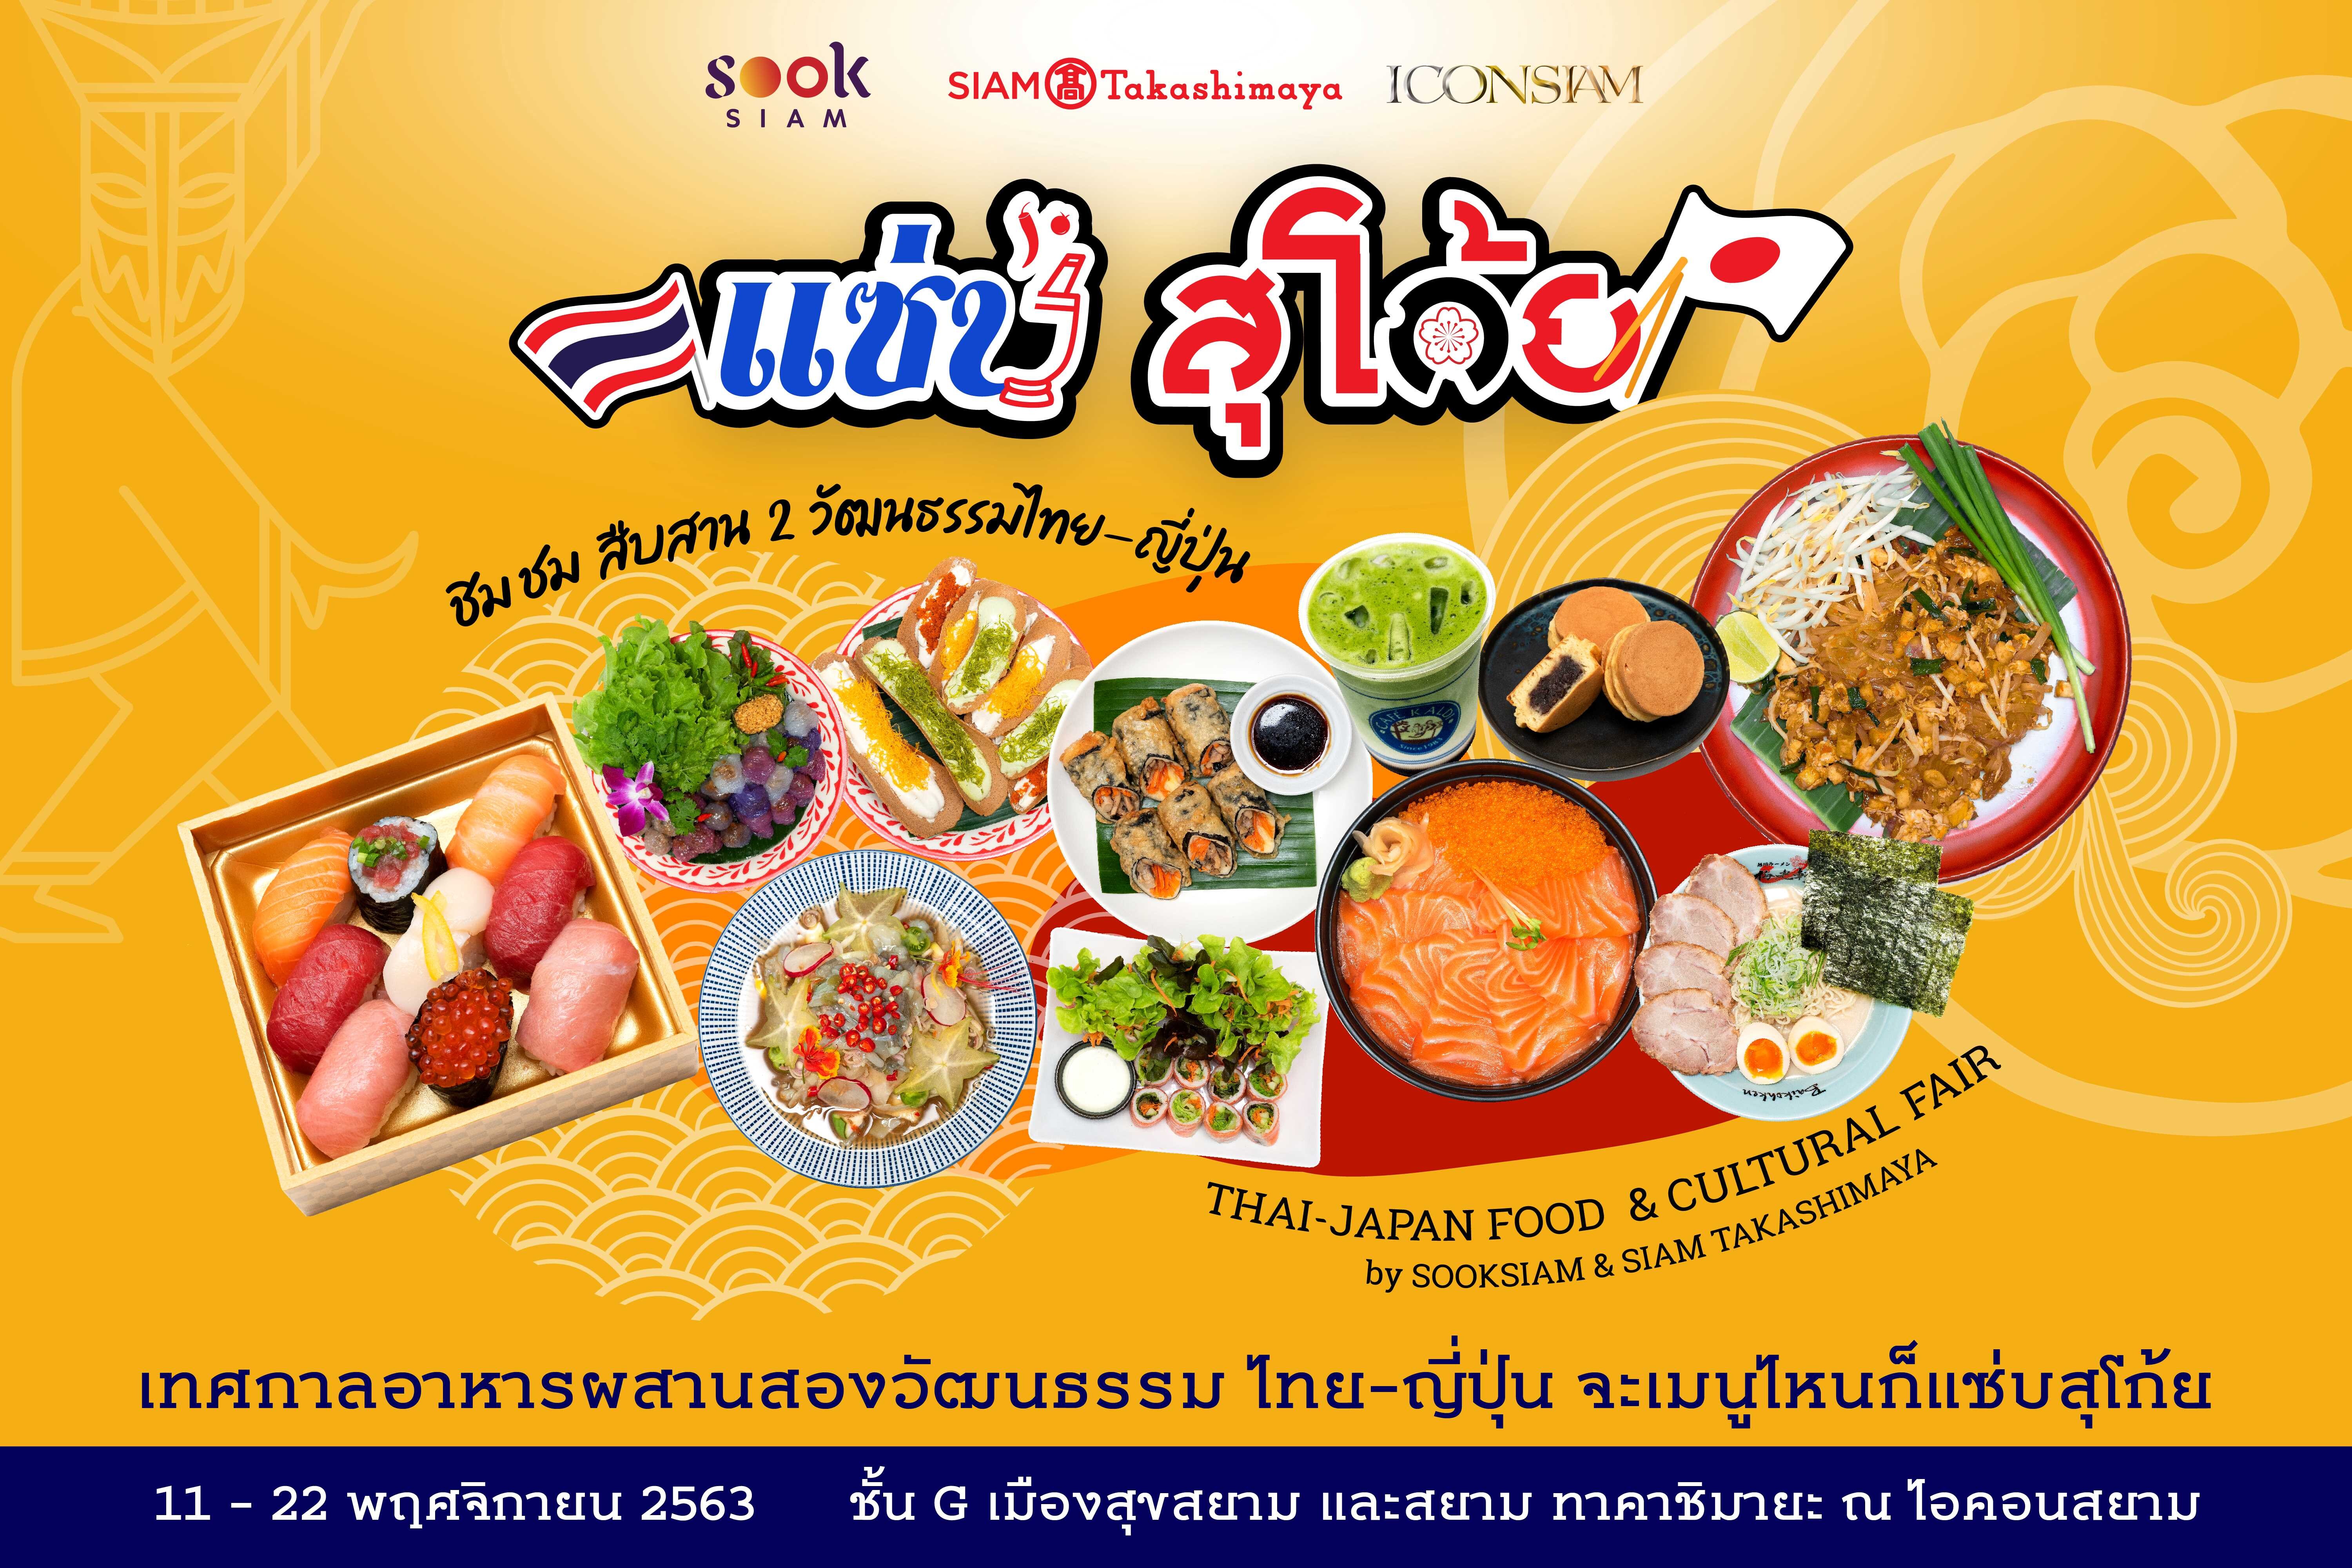 สยาม ทาคาชิมายะ ร่วมกับ เมืองสุขสยาม ชวนอิ่มอร่อยกับเทศกาลอาหารผสานสองวัฒนธรรมไทย - ญี่ปุ่น ในงาน "แซ่บ สุโก้ย Zaab Sugoi Thai-Japan Food & Cultural Fair"